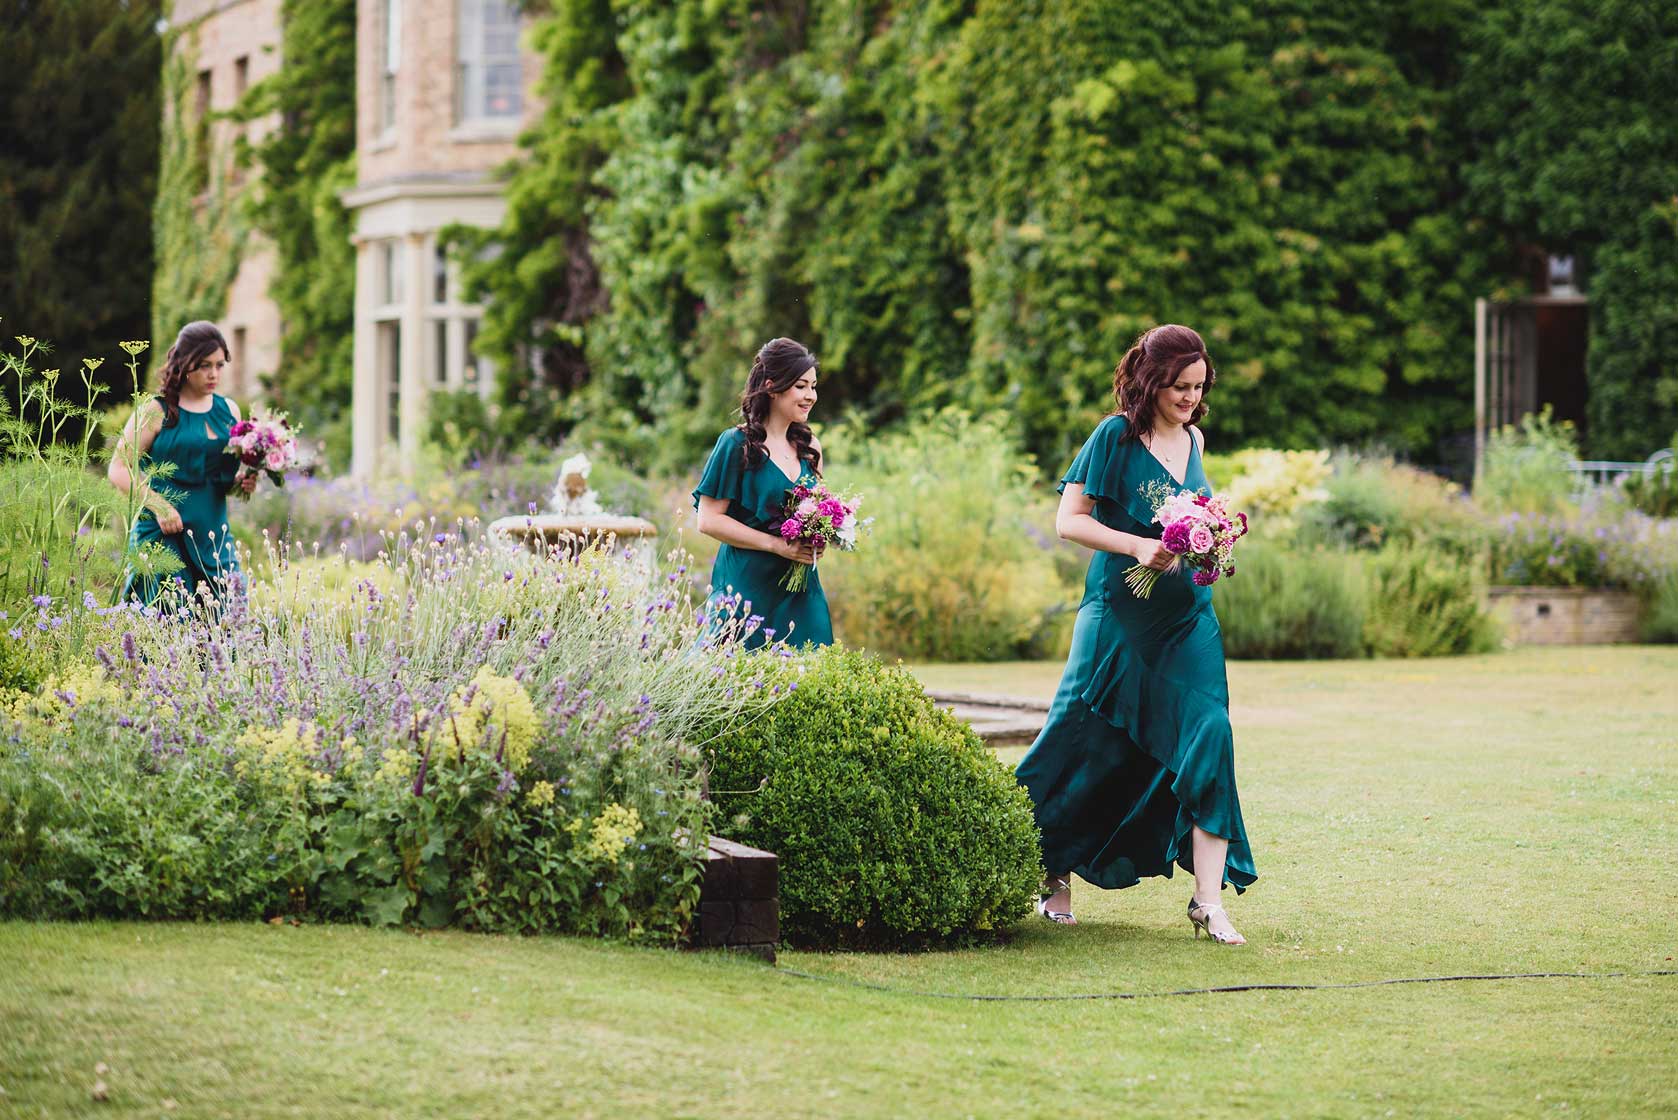 Narborough Hall Gardens Wedding in Norfolk